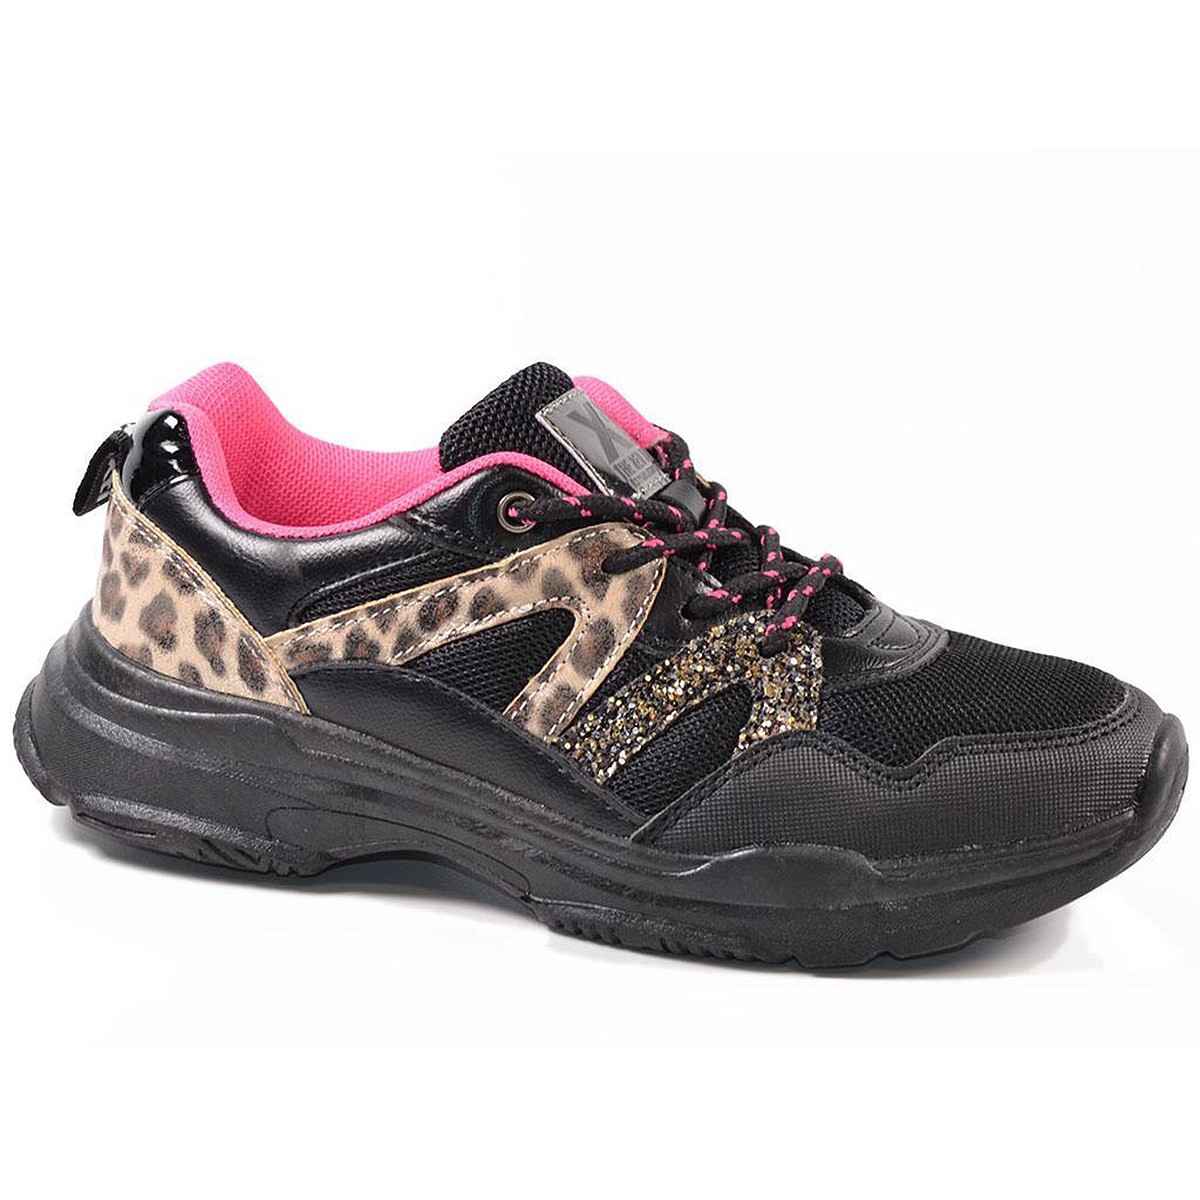 57305 Xti Kids Sneaker Zapato Sneaker con diferentes materiales en textil y sintético, con detalles animal print. Cordones bicol